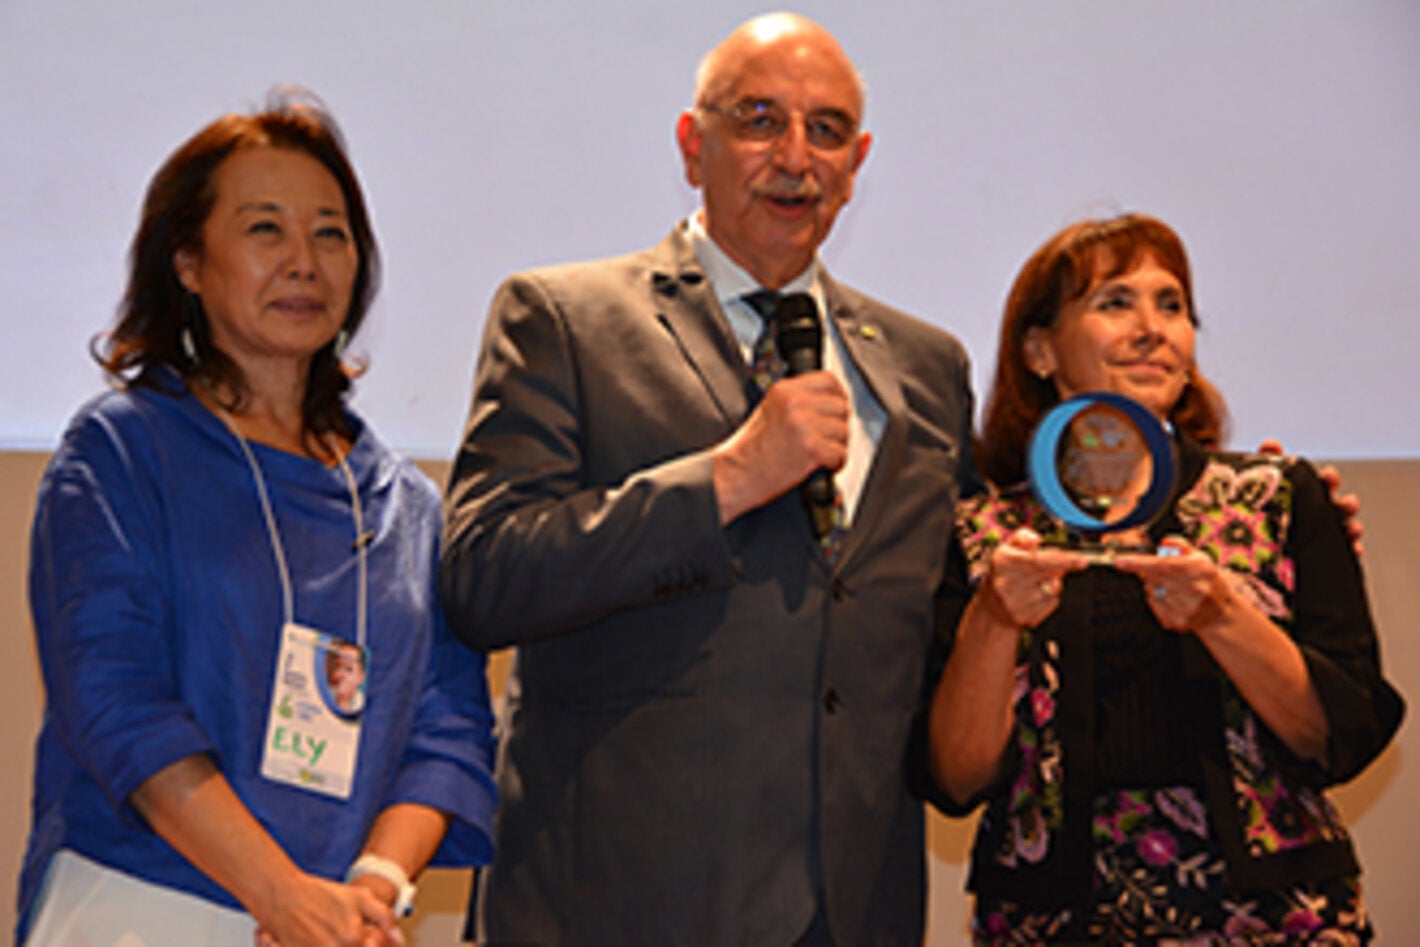 Prêmio de reconhecimento OPAS por sua parceria e apoio ao programa Criança Feliz